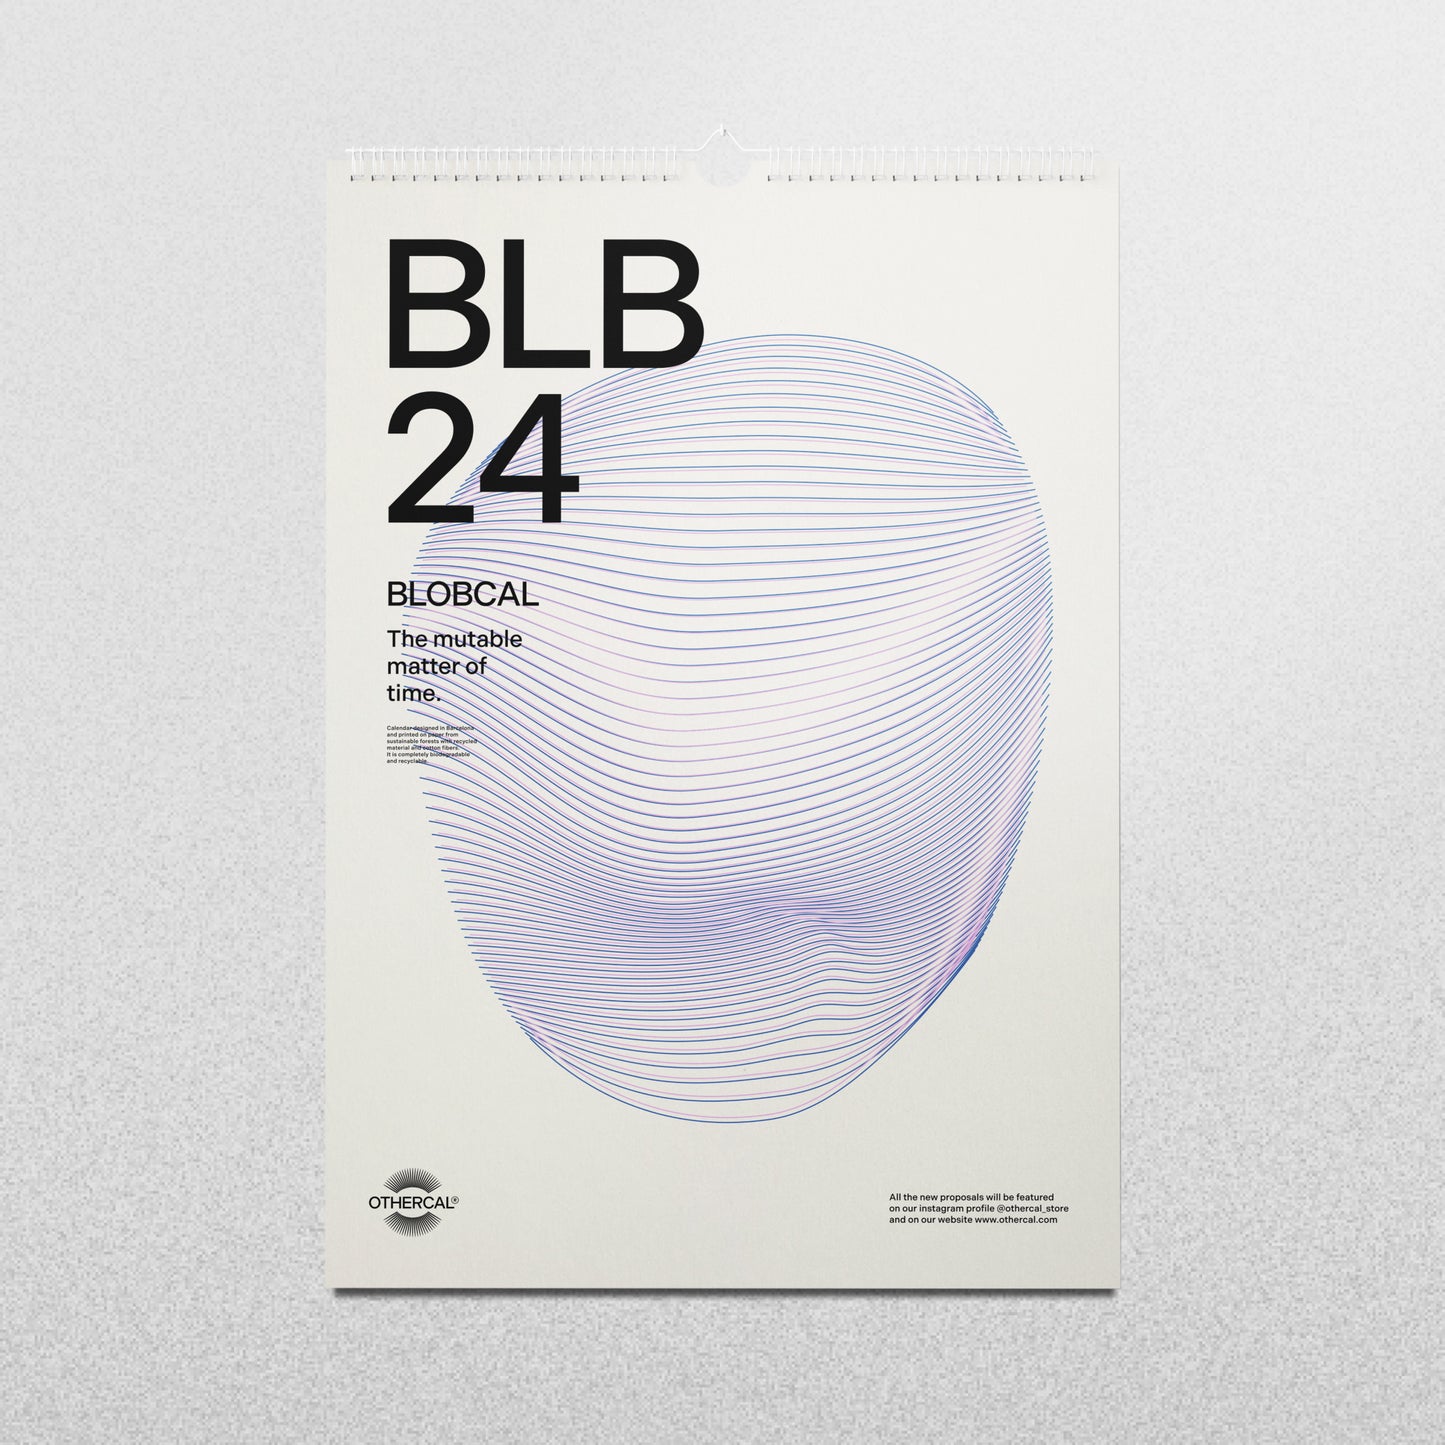 Calendario BLB'24